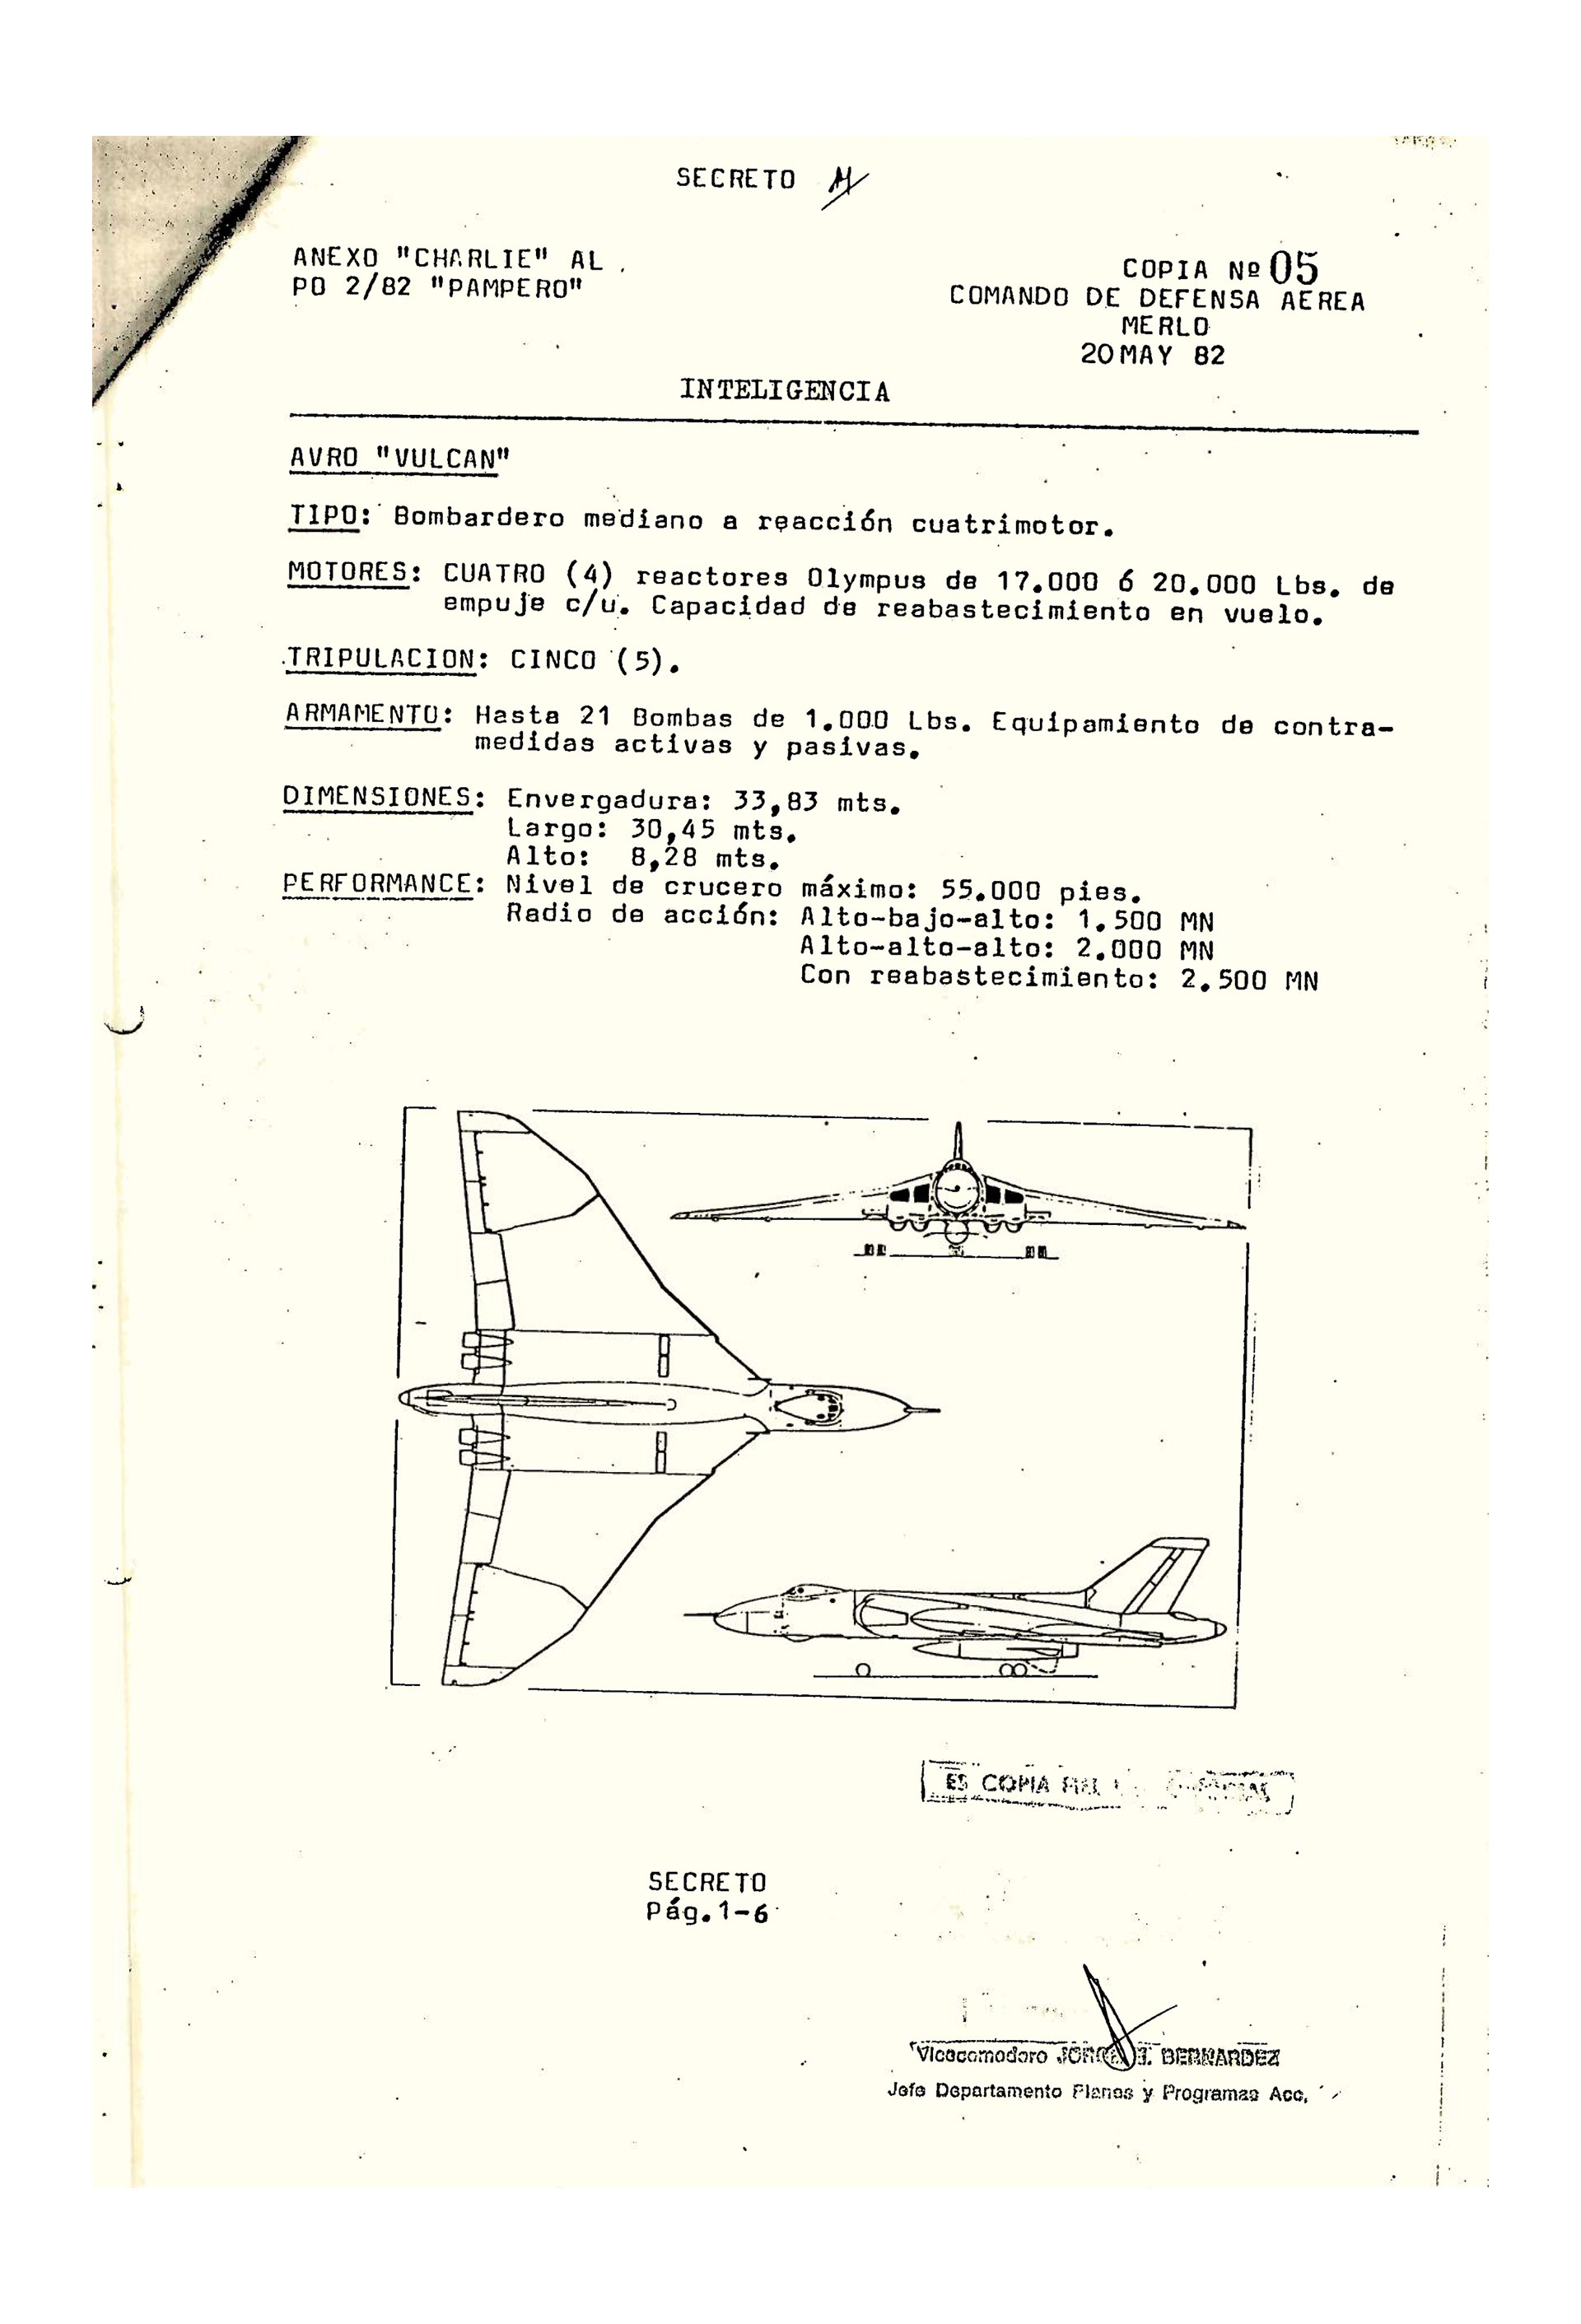 Ficha del bombardero Avro Vulcan, según el anexo de Inteligencia de la Operación PAMPERO